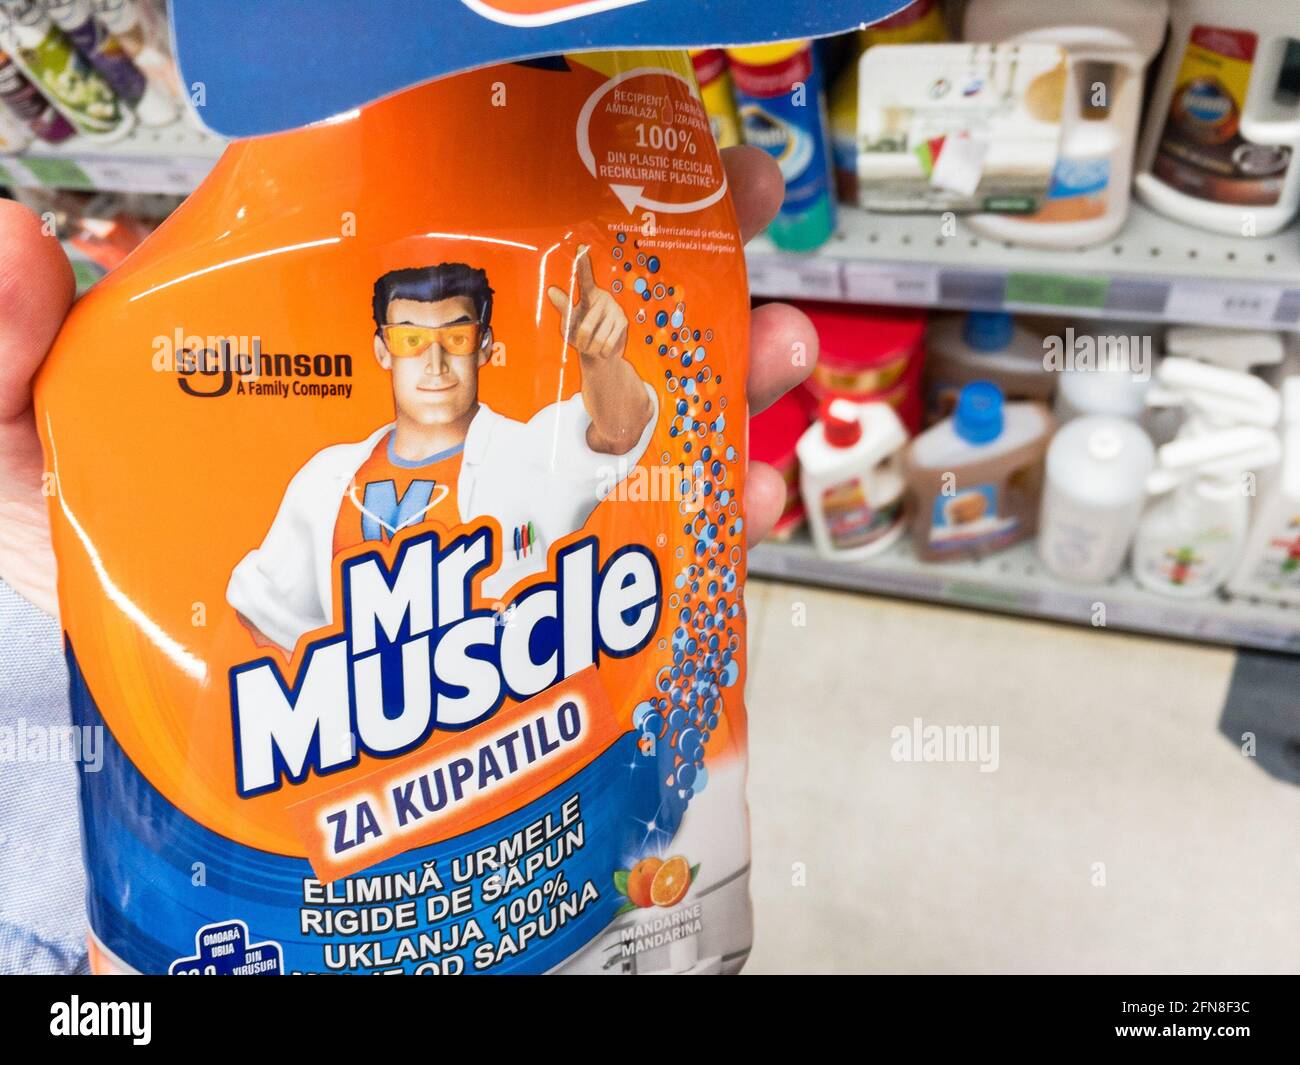 Mr Muscle Gel Sink & Drain Unblocker 500ml - Tesco Groceries